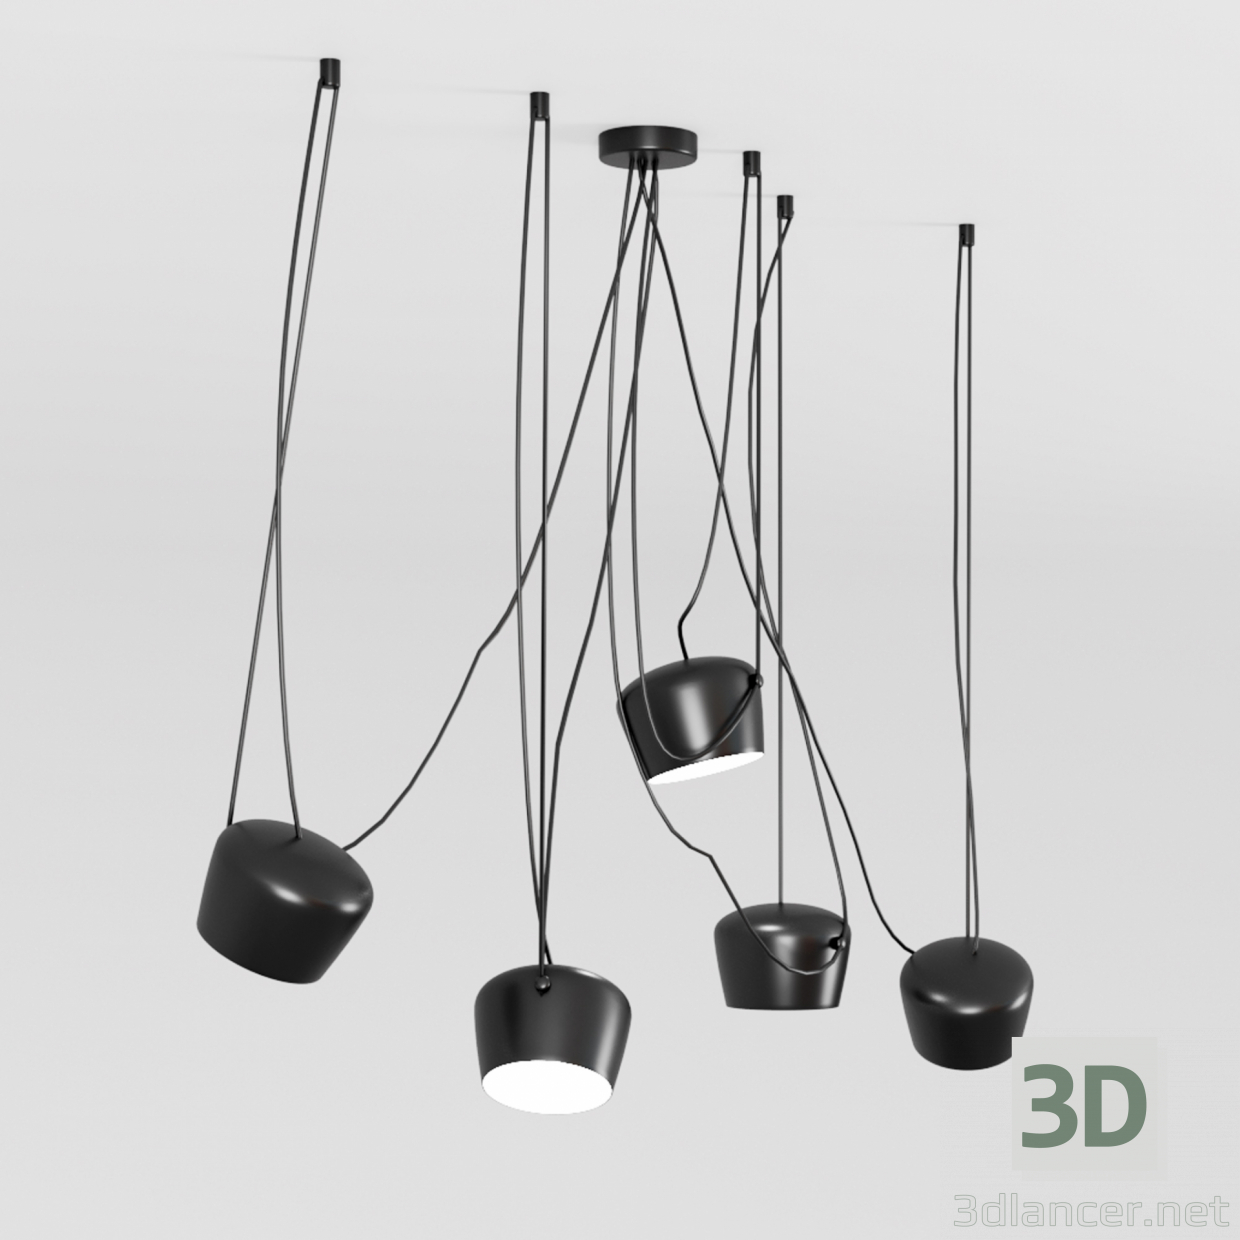 Set-schwarz 3D-Modell kaufen - Rendern